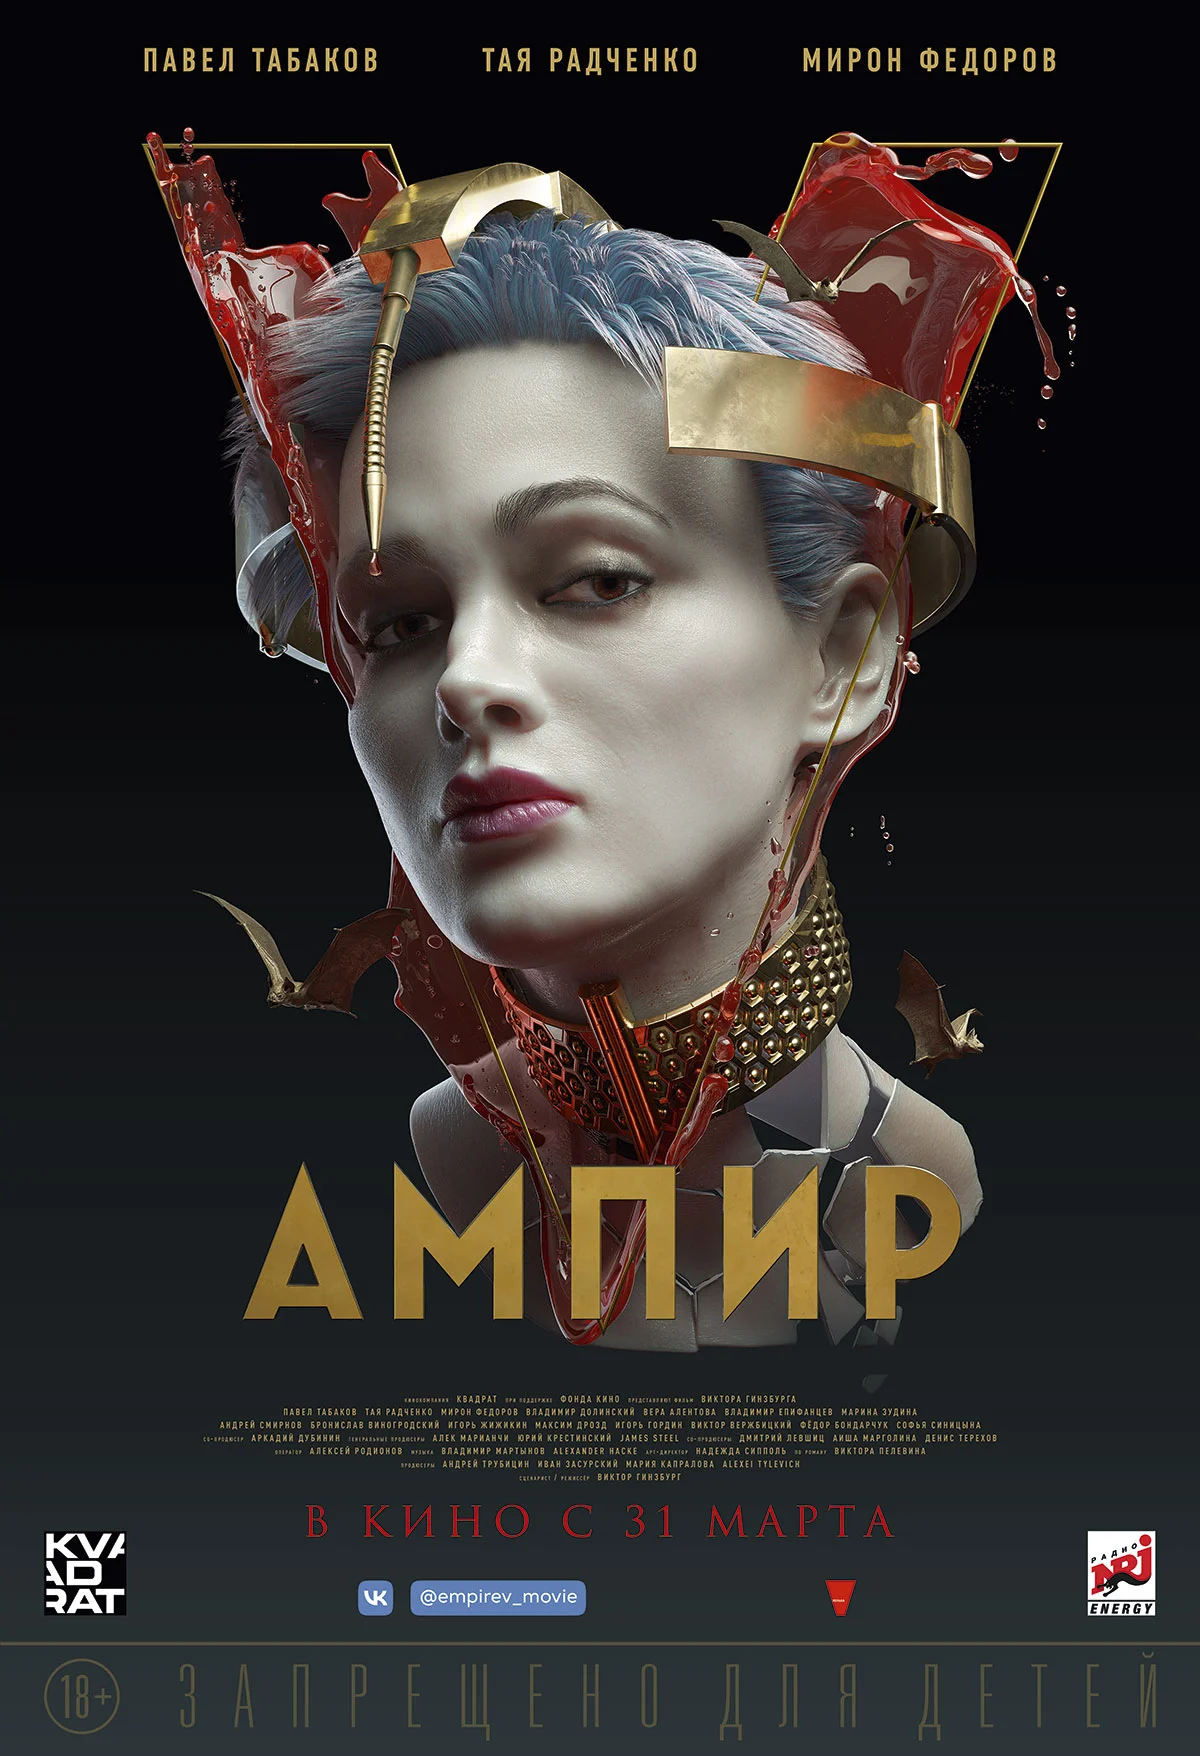 Прокатчик «Вольга» показал новые персональные постеры «Ампира V» - фото 1